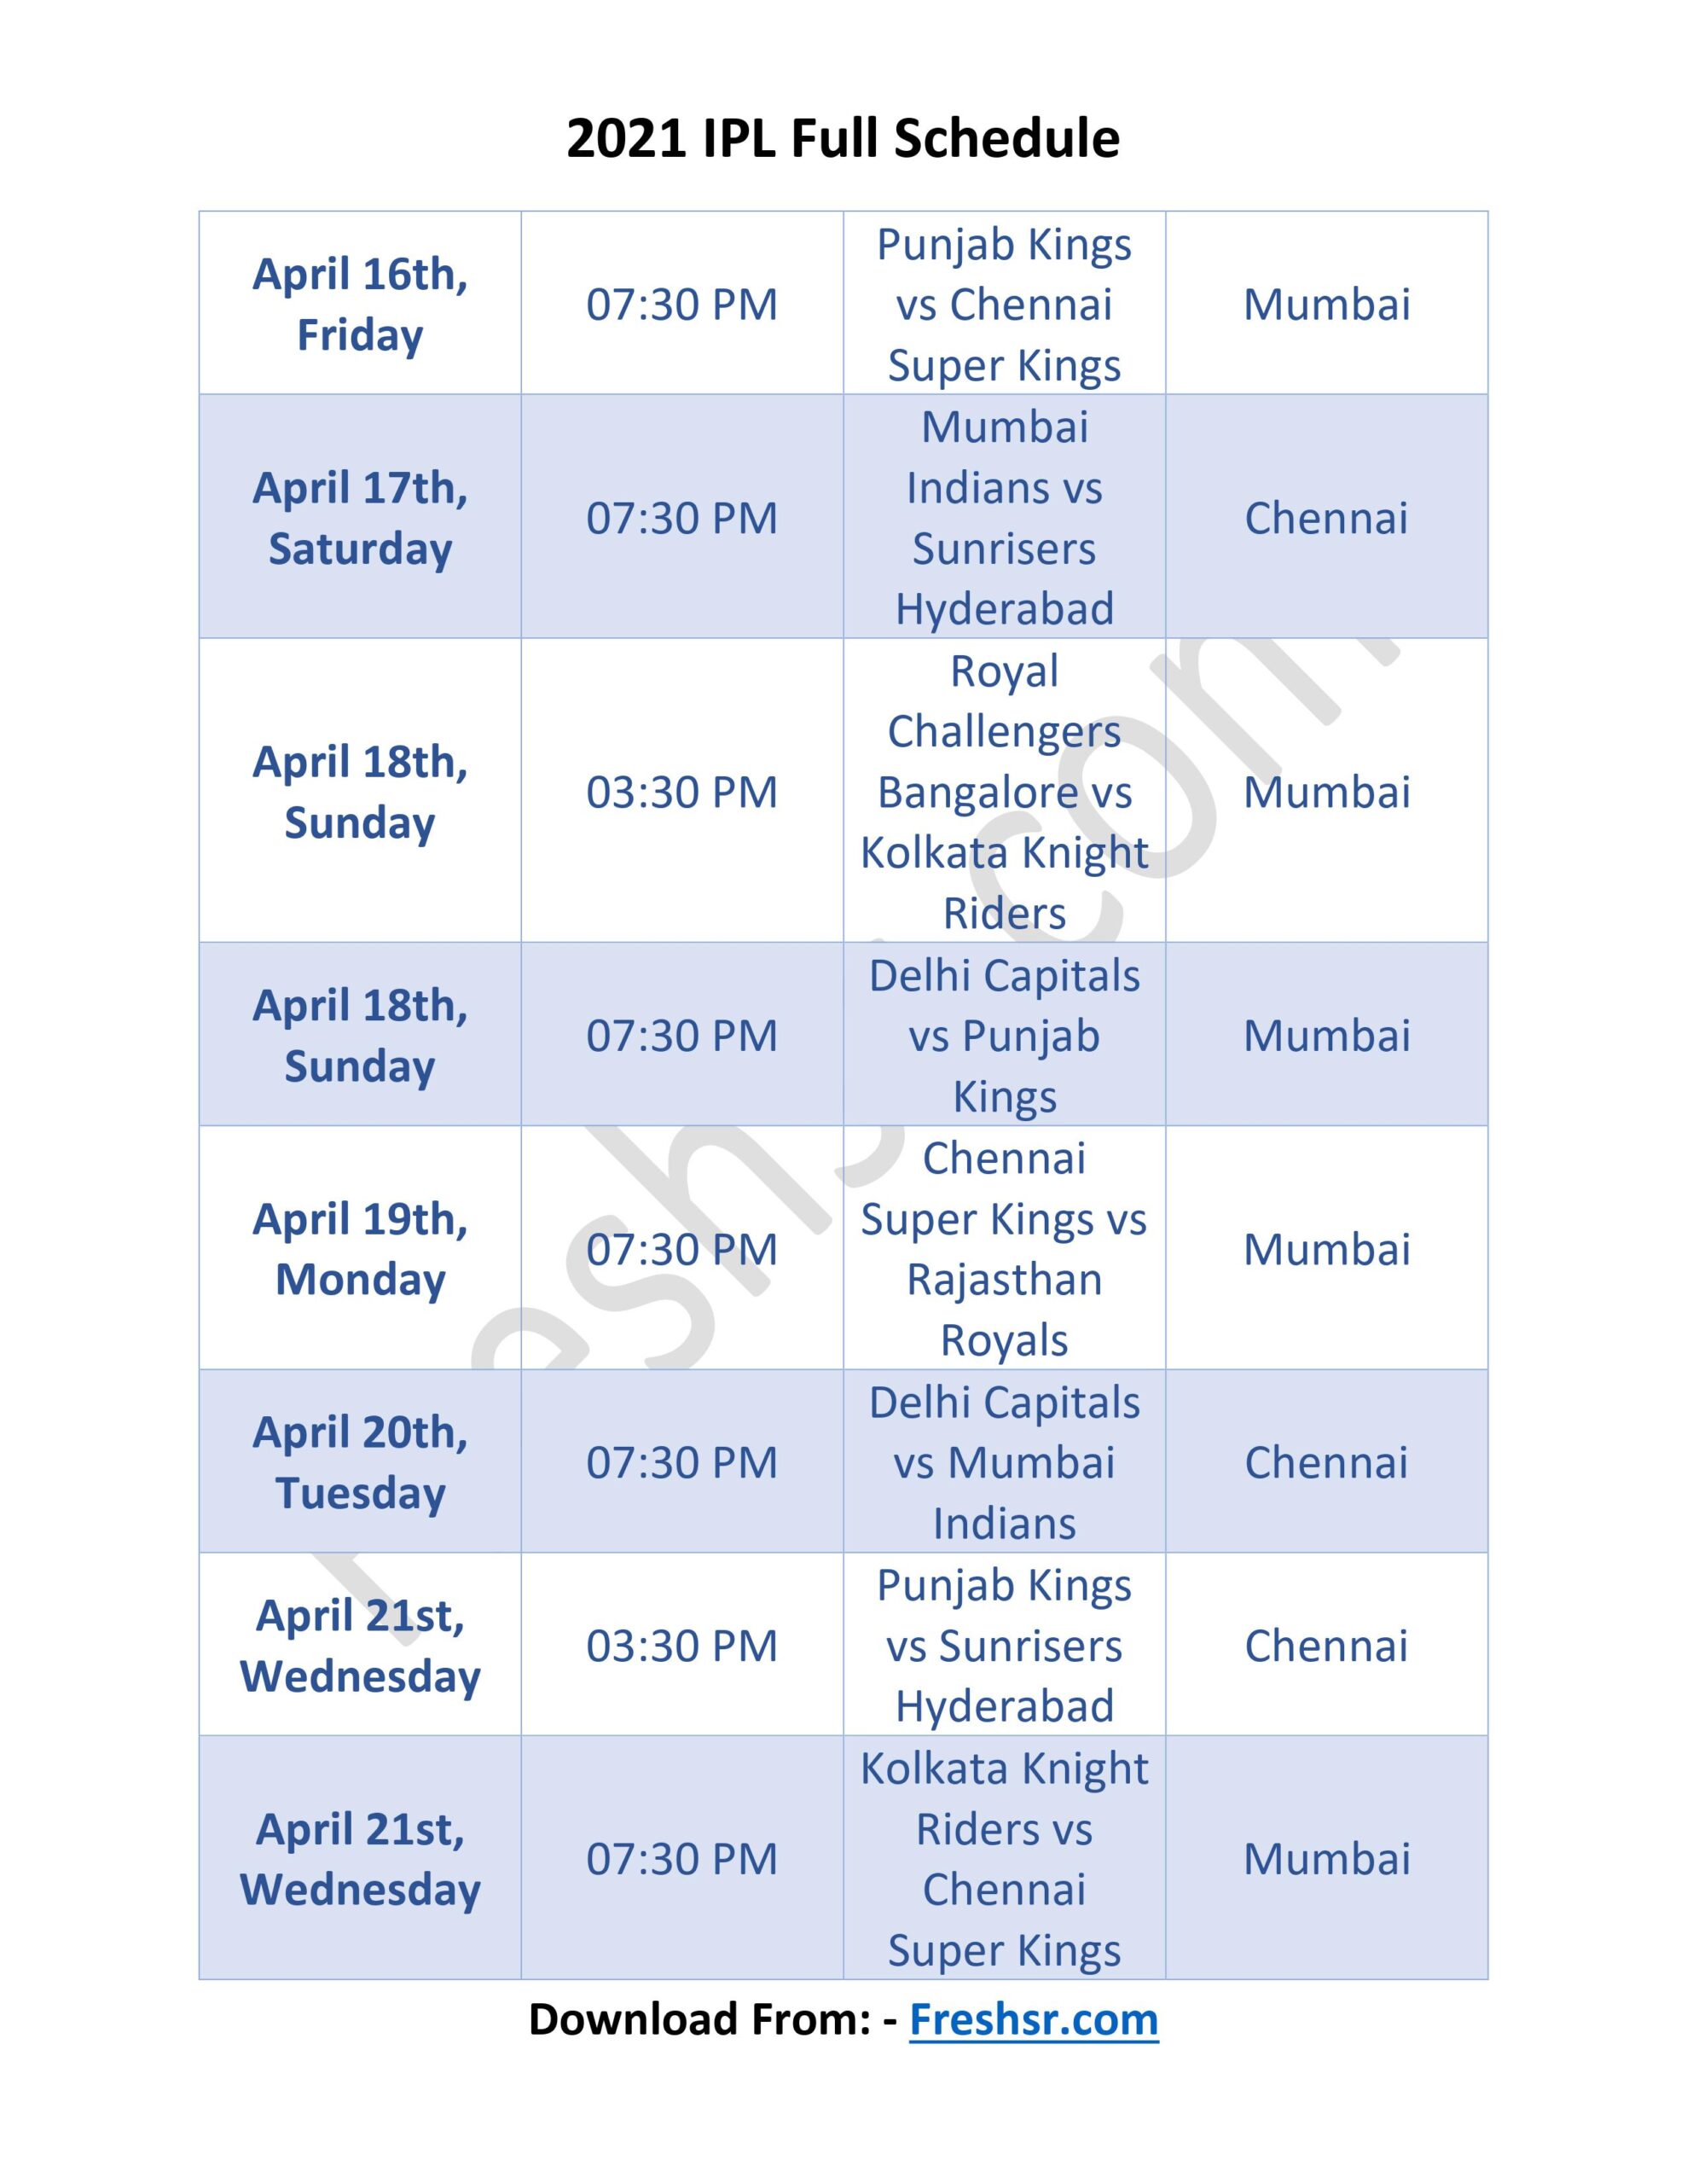 IPL 2021 Full Schedule